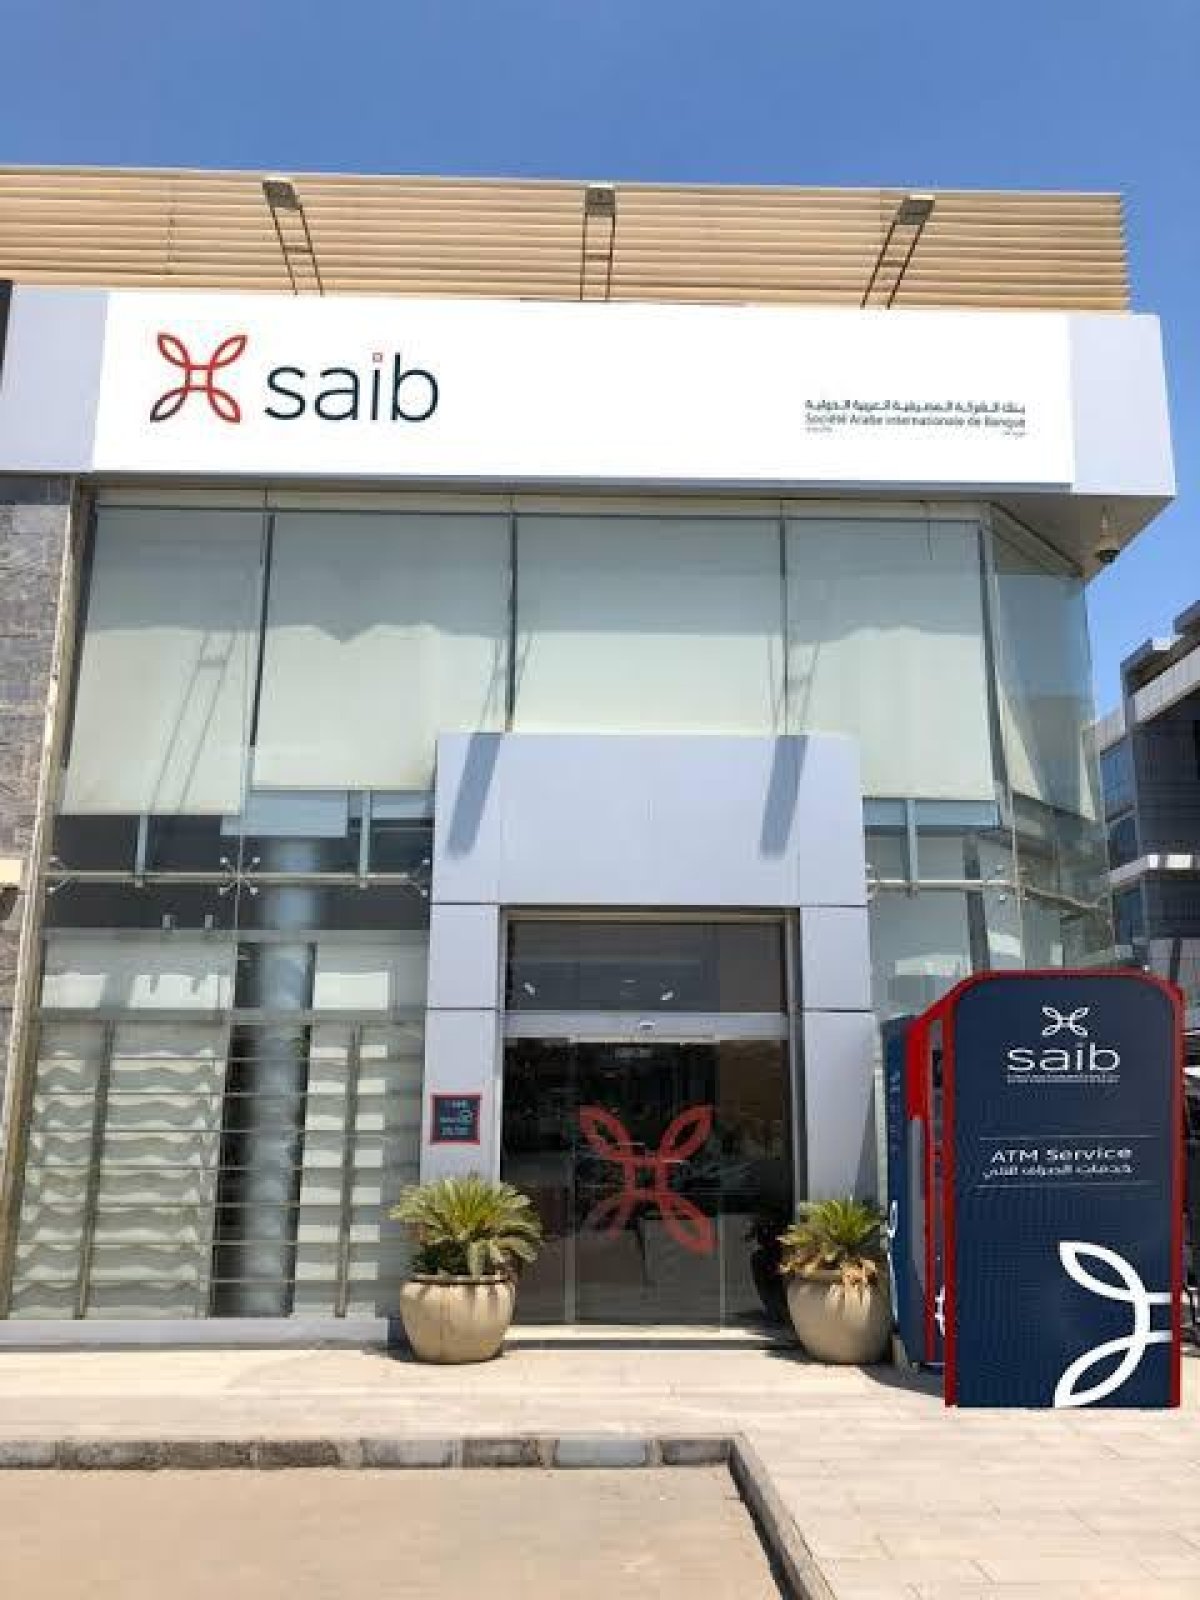 بنك "Saib" يحقق أرباح بقيمة 16 مليون دولار خلال النصف الأول